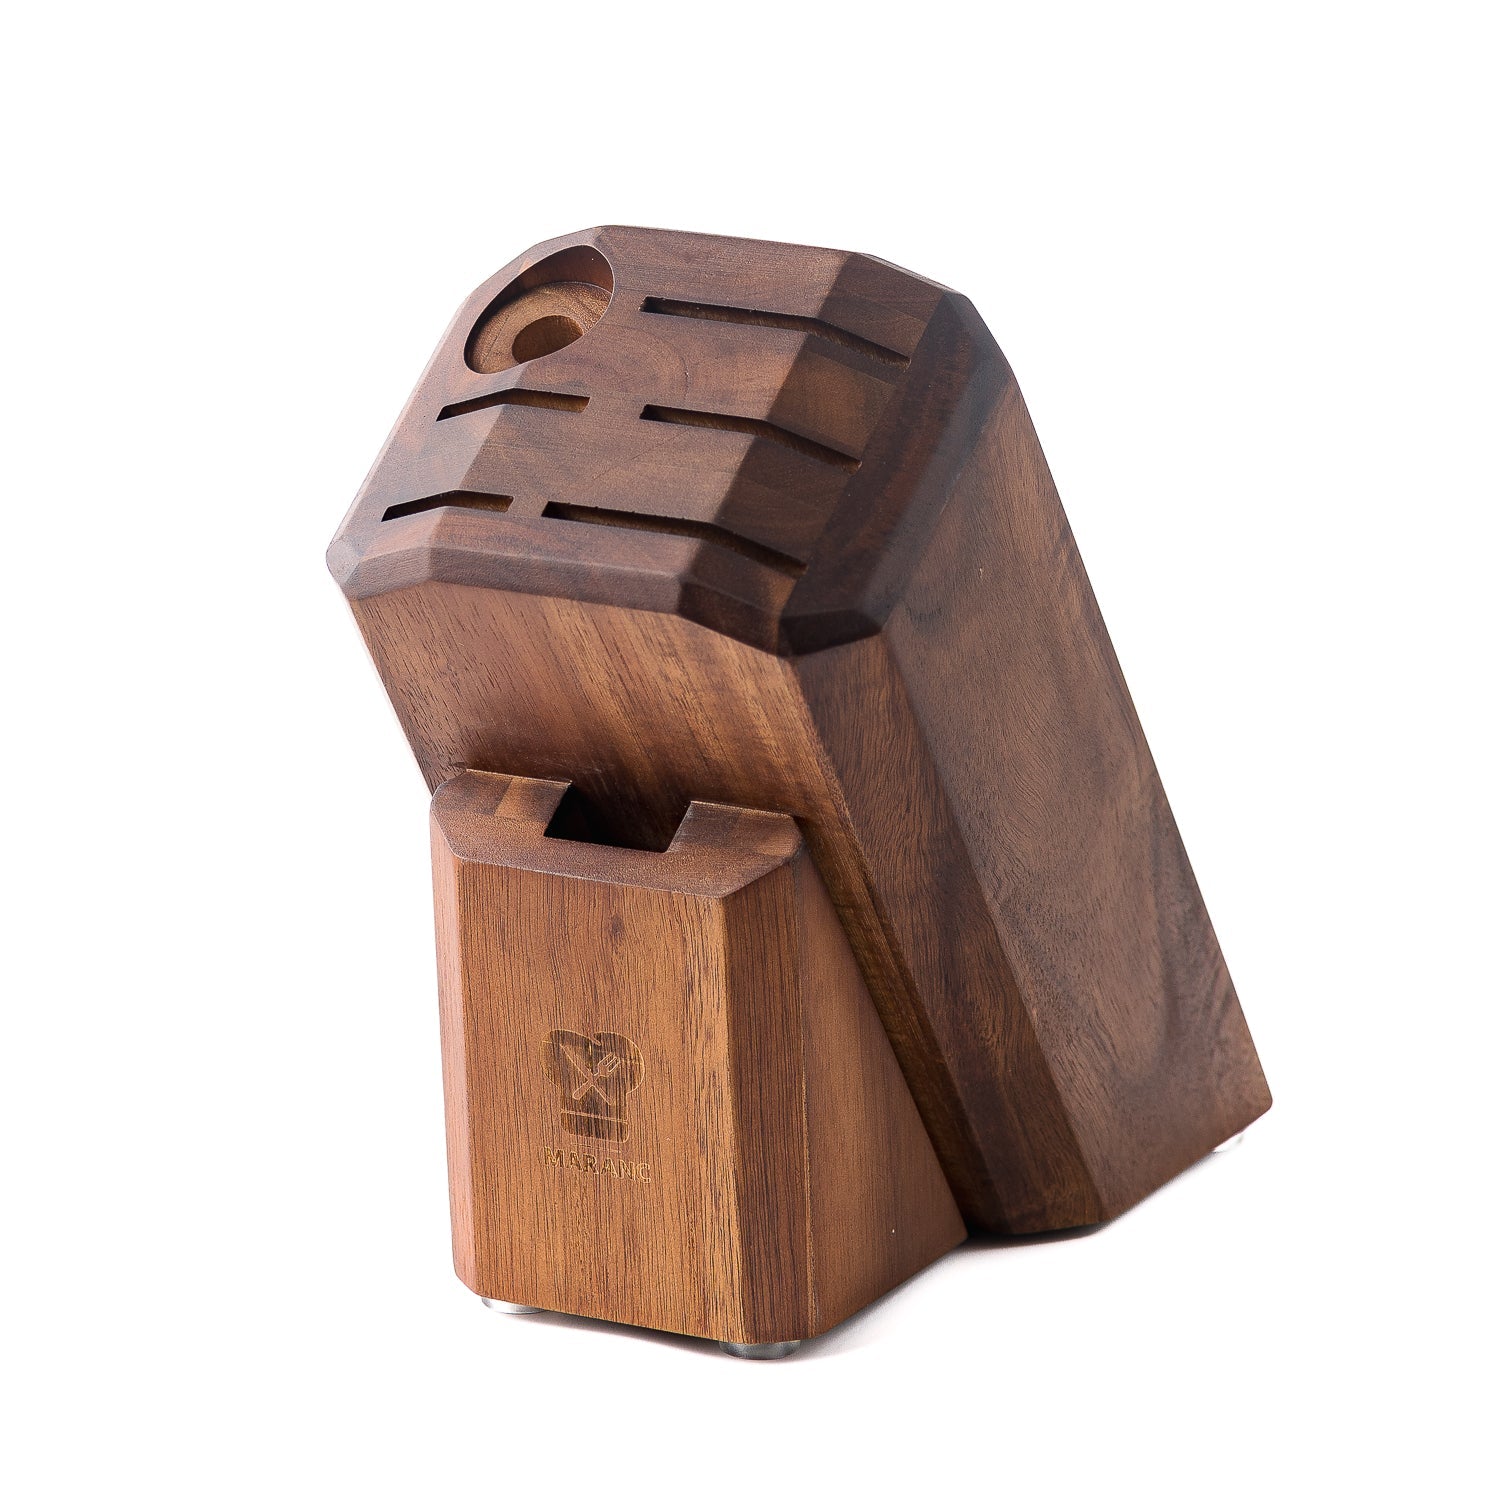 Suport cutite Maranc din lemn pentru 5 cutite M198 -